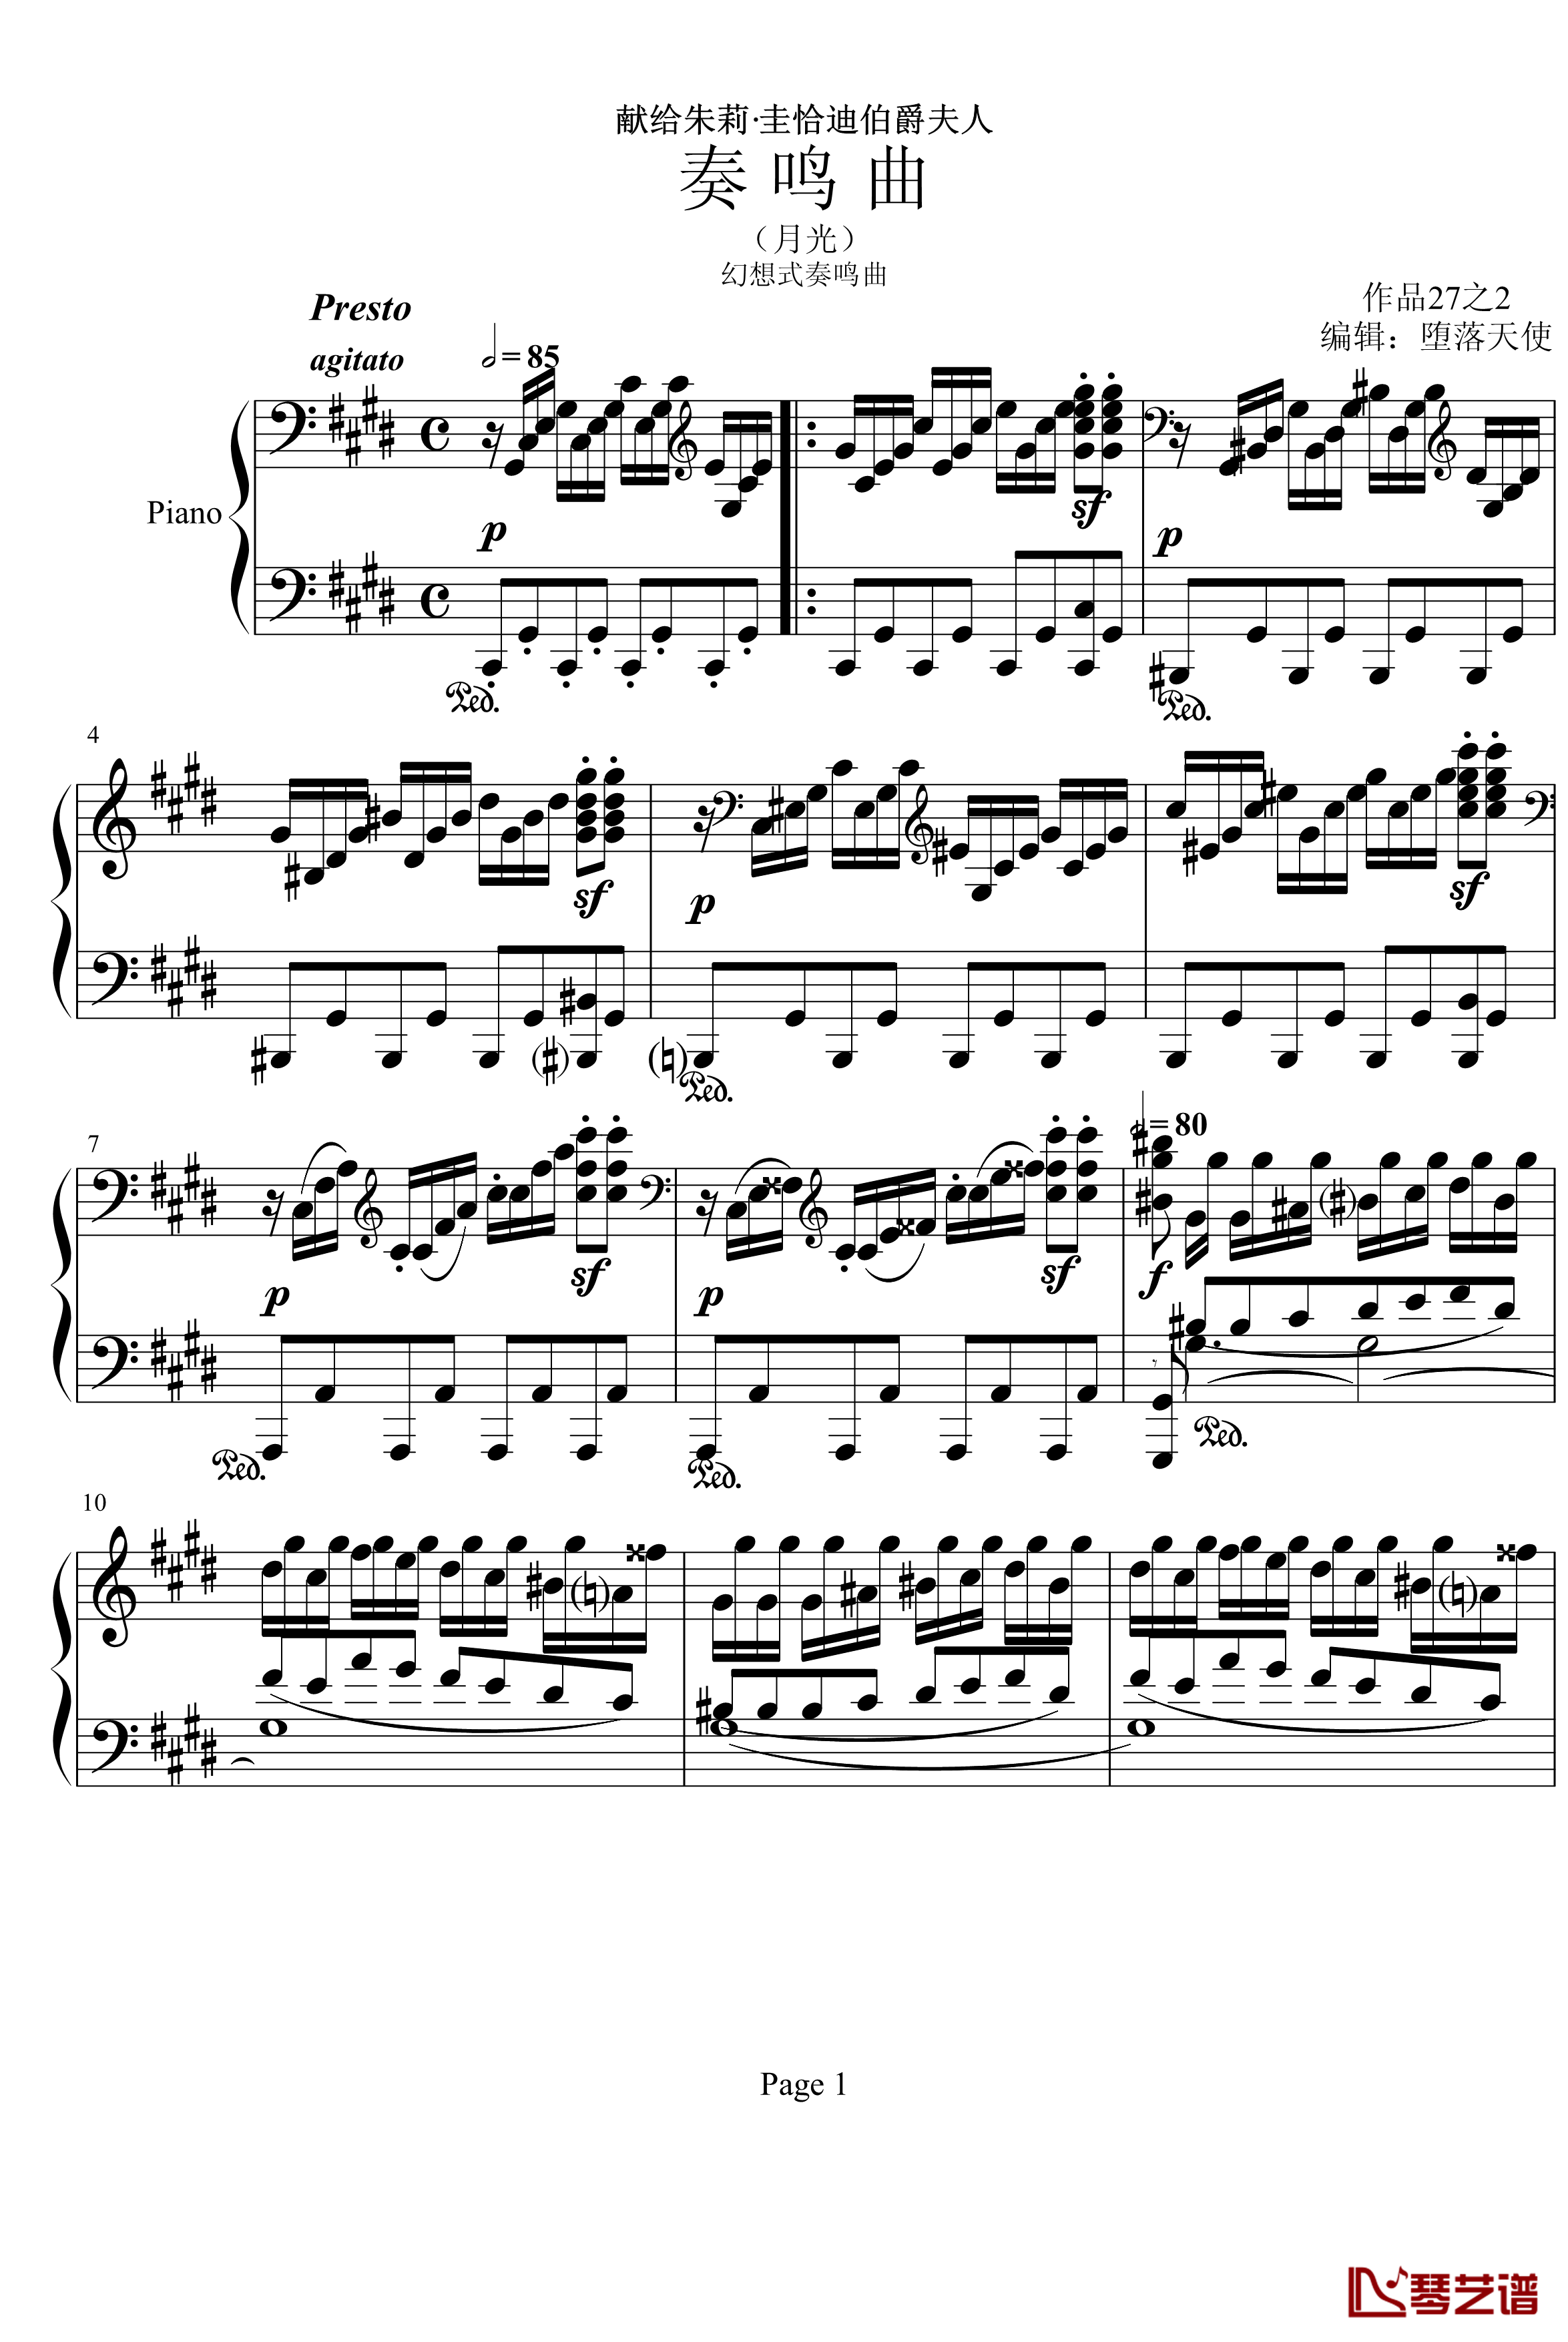 月光奏鸣曲第三乐章钢琴谱-贝多芬-beethoven1